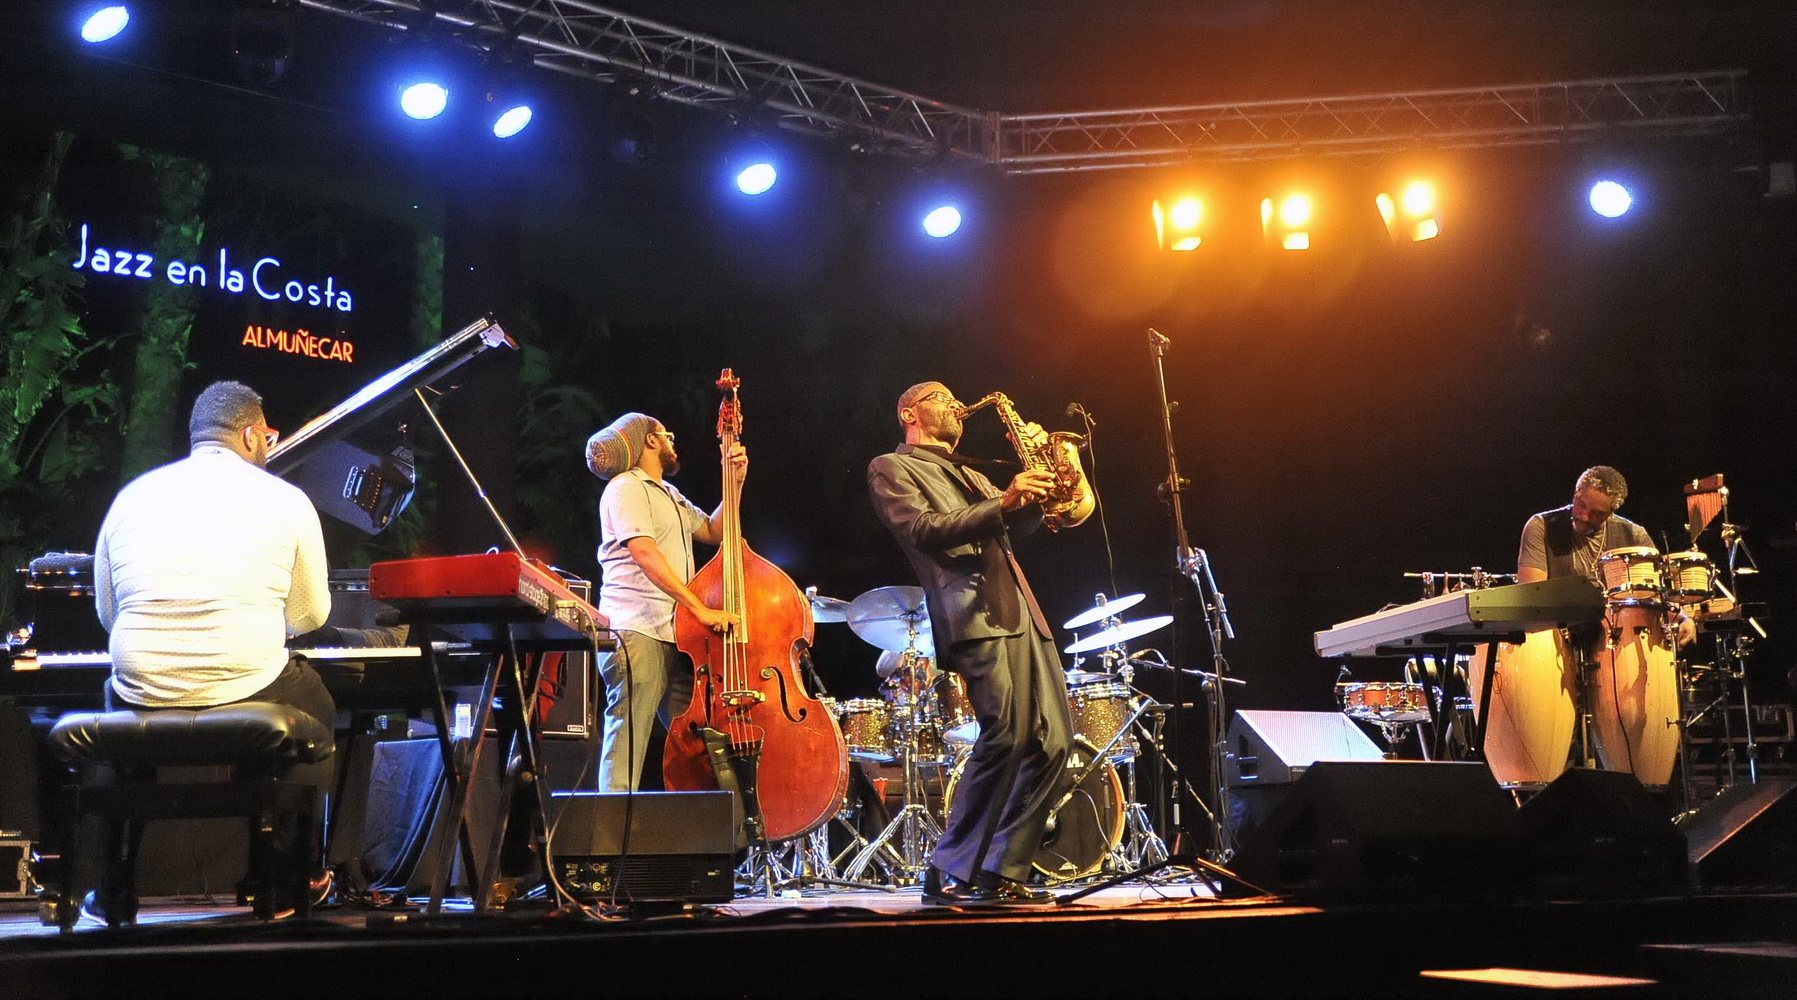 El jazz electrizante de Kenny Garrett triunfó en Jazz en la Costa de Almuñécar